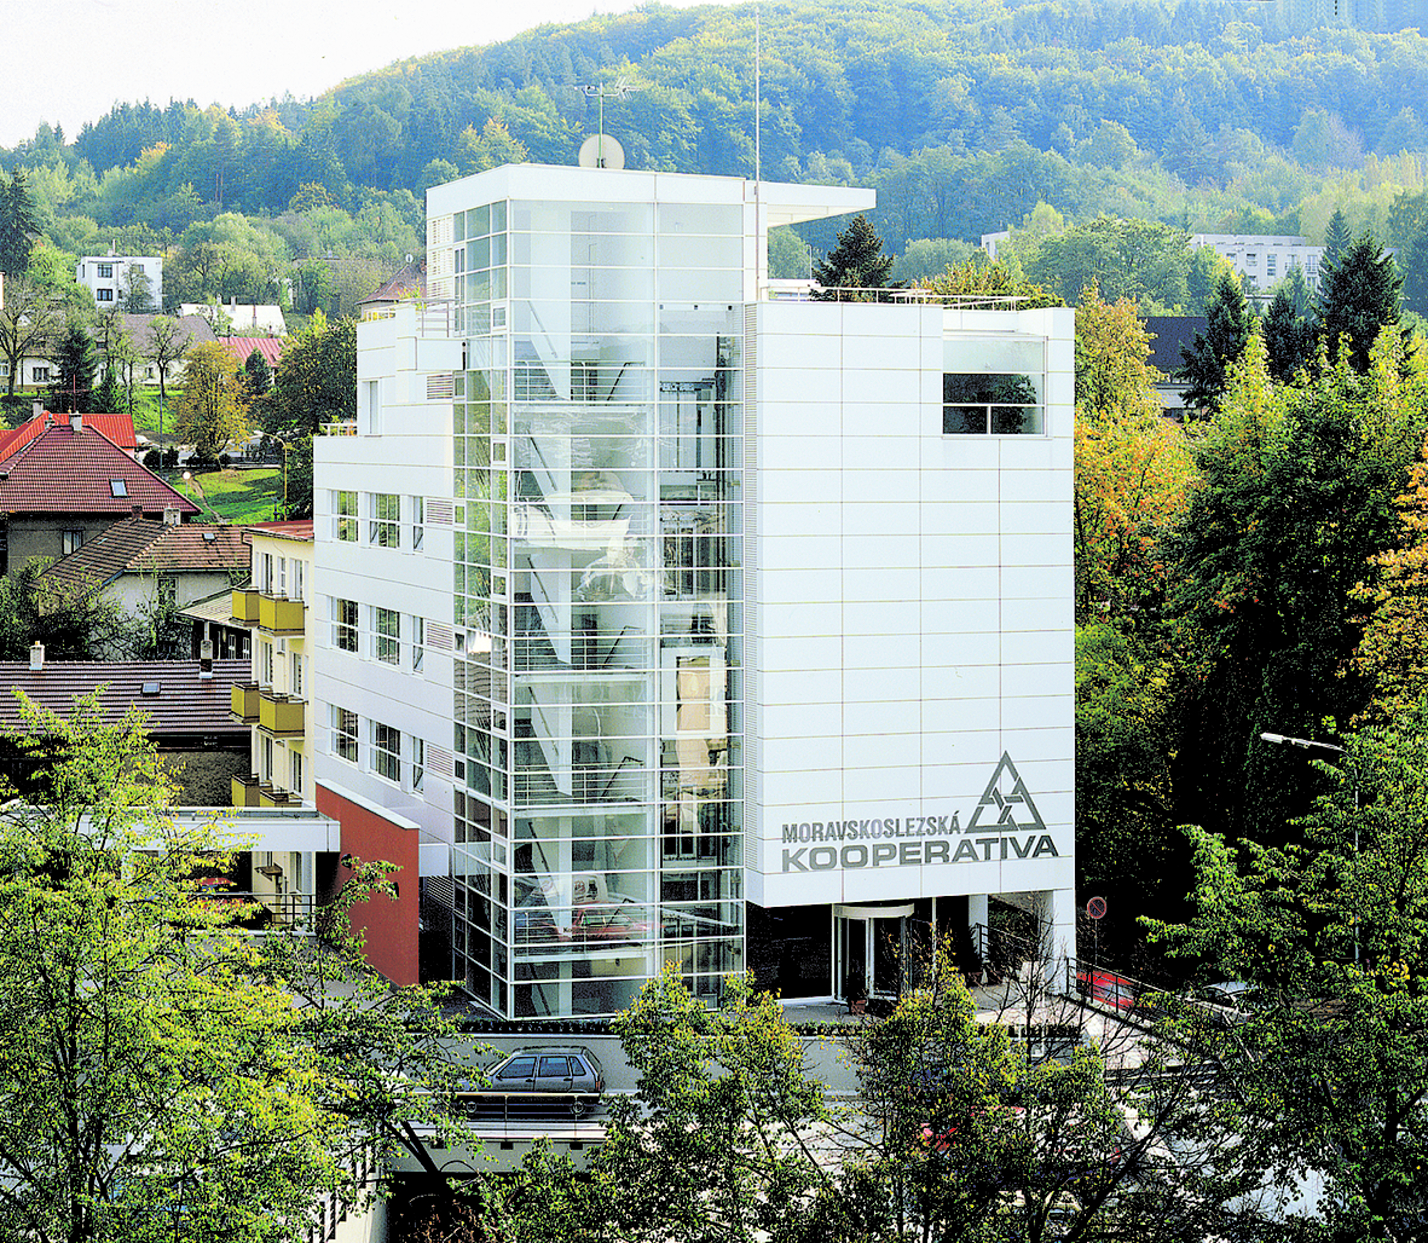 Projekt administrativní budovy Moravskoslezské kooperativy ve Zlíně projektovala společnost Centroprojekt